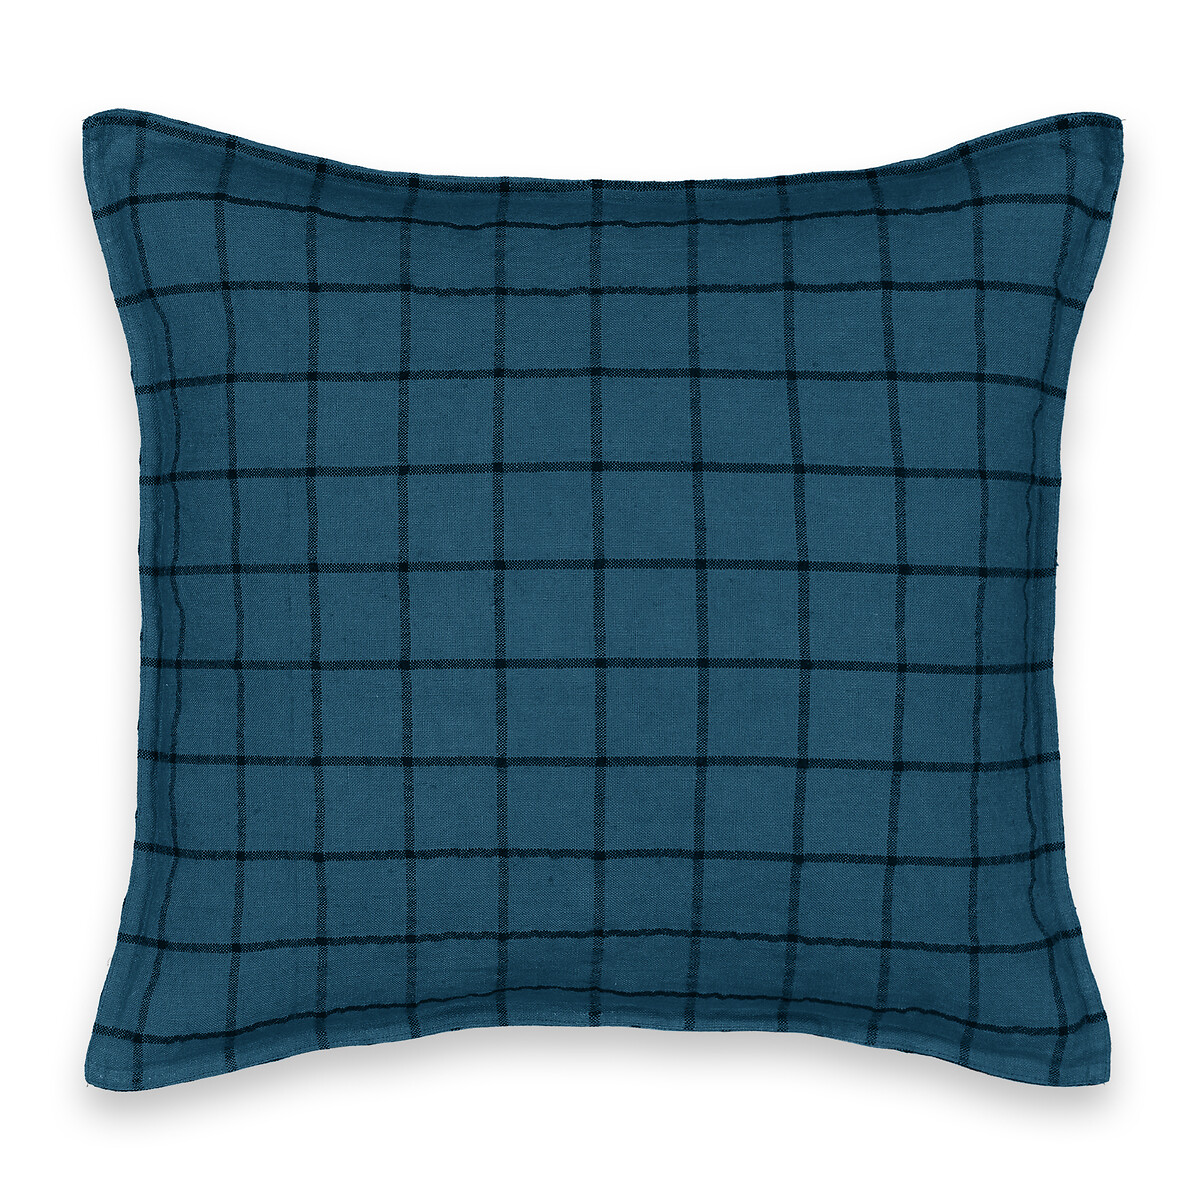 Чехол На подушку из льна Barley 45 x 45 см синий